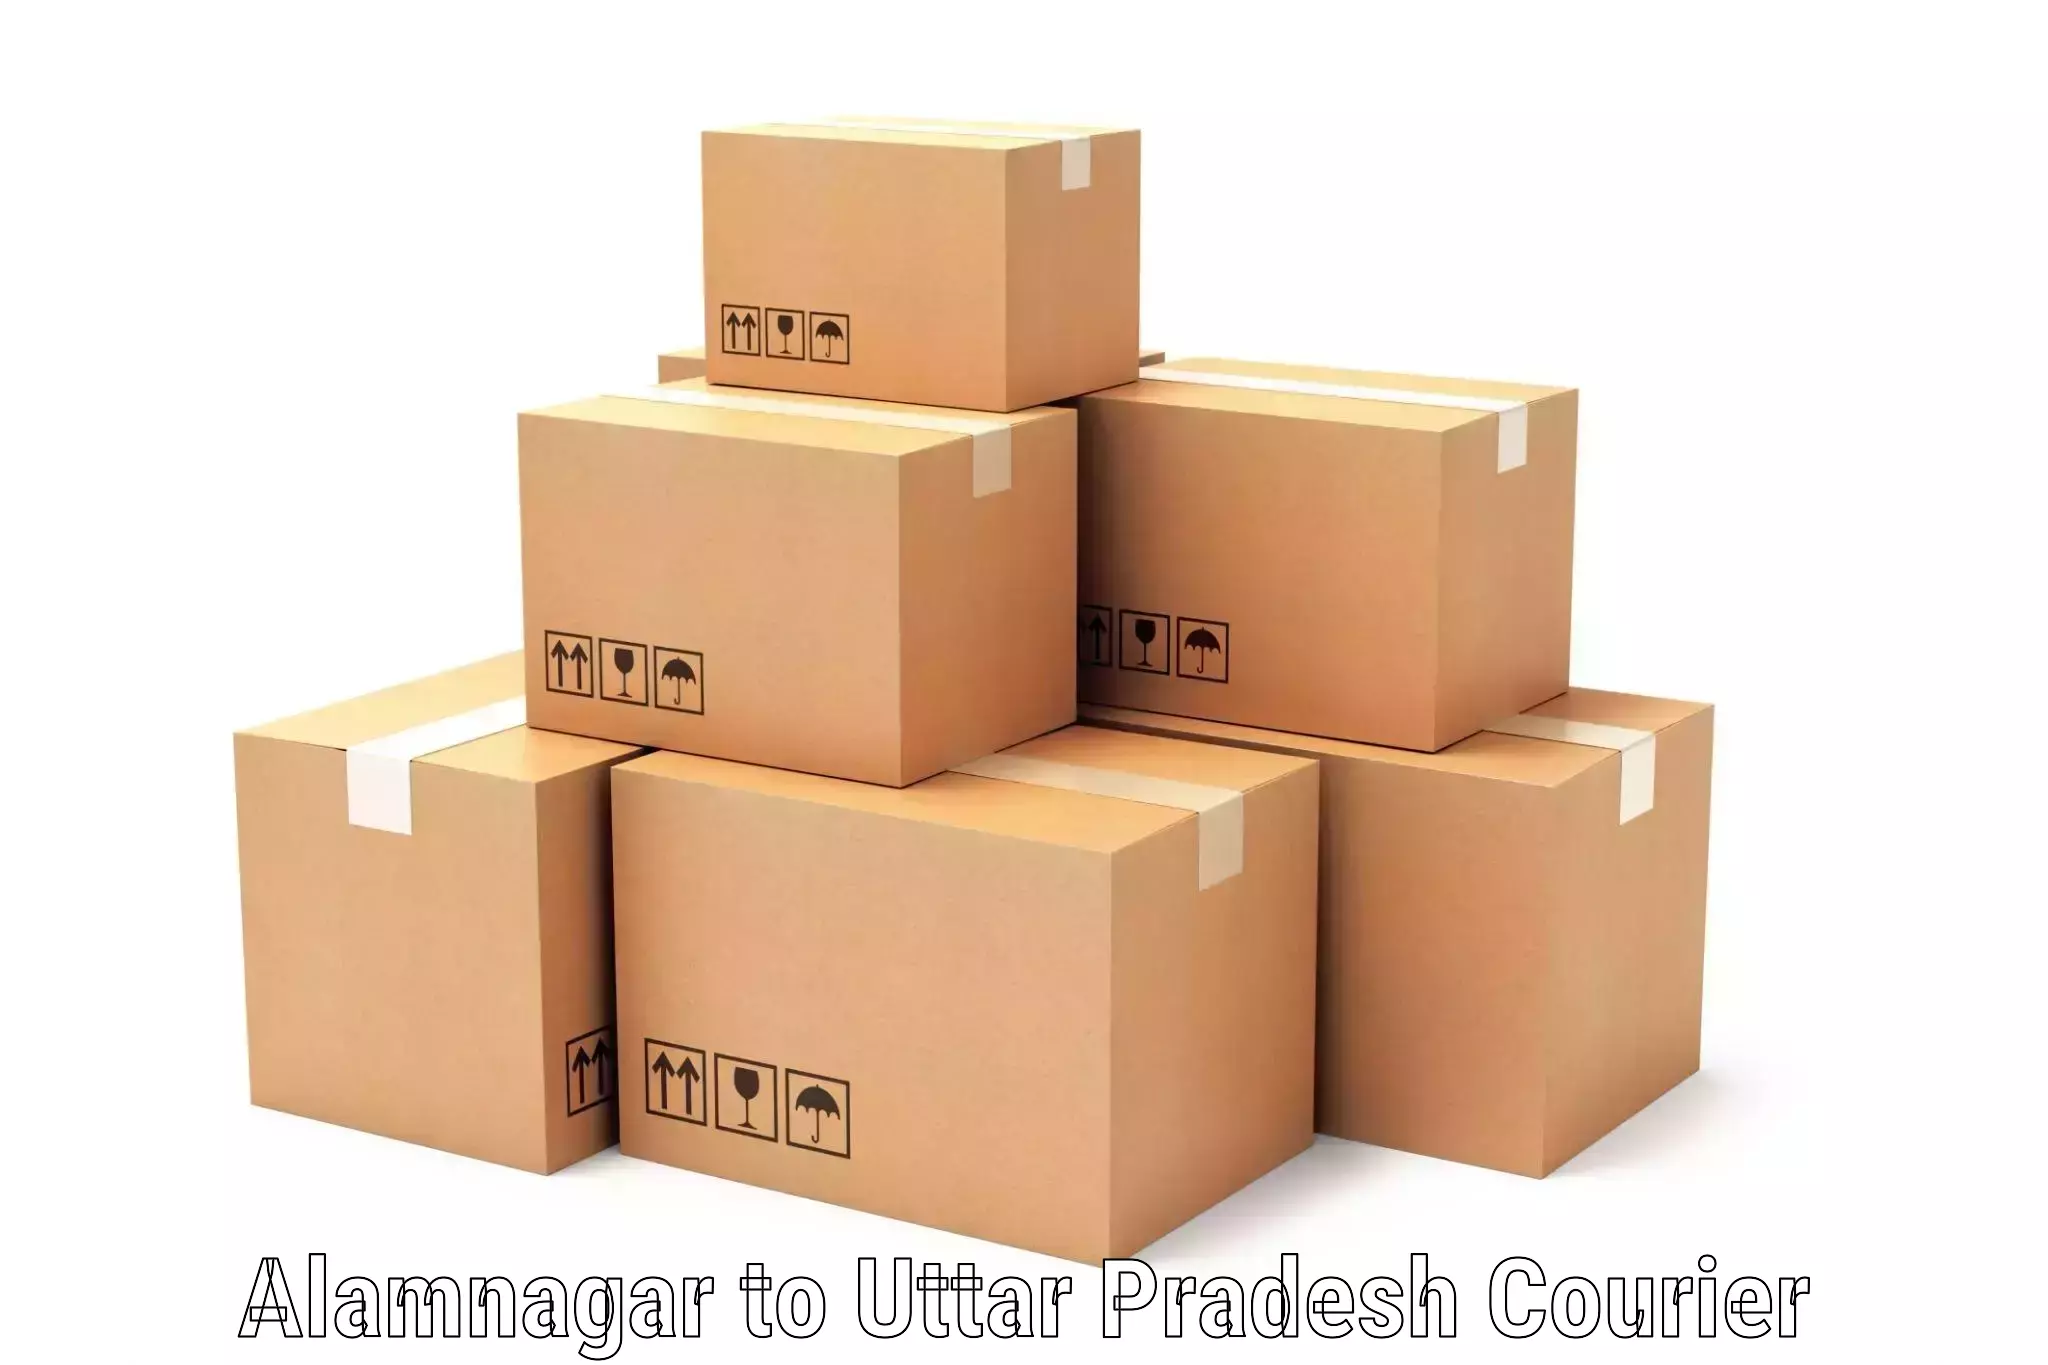 Regular parcel service Alamnagar to Uttar Pradesh